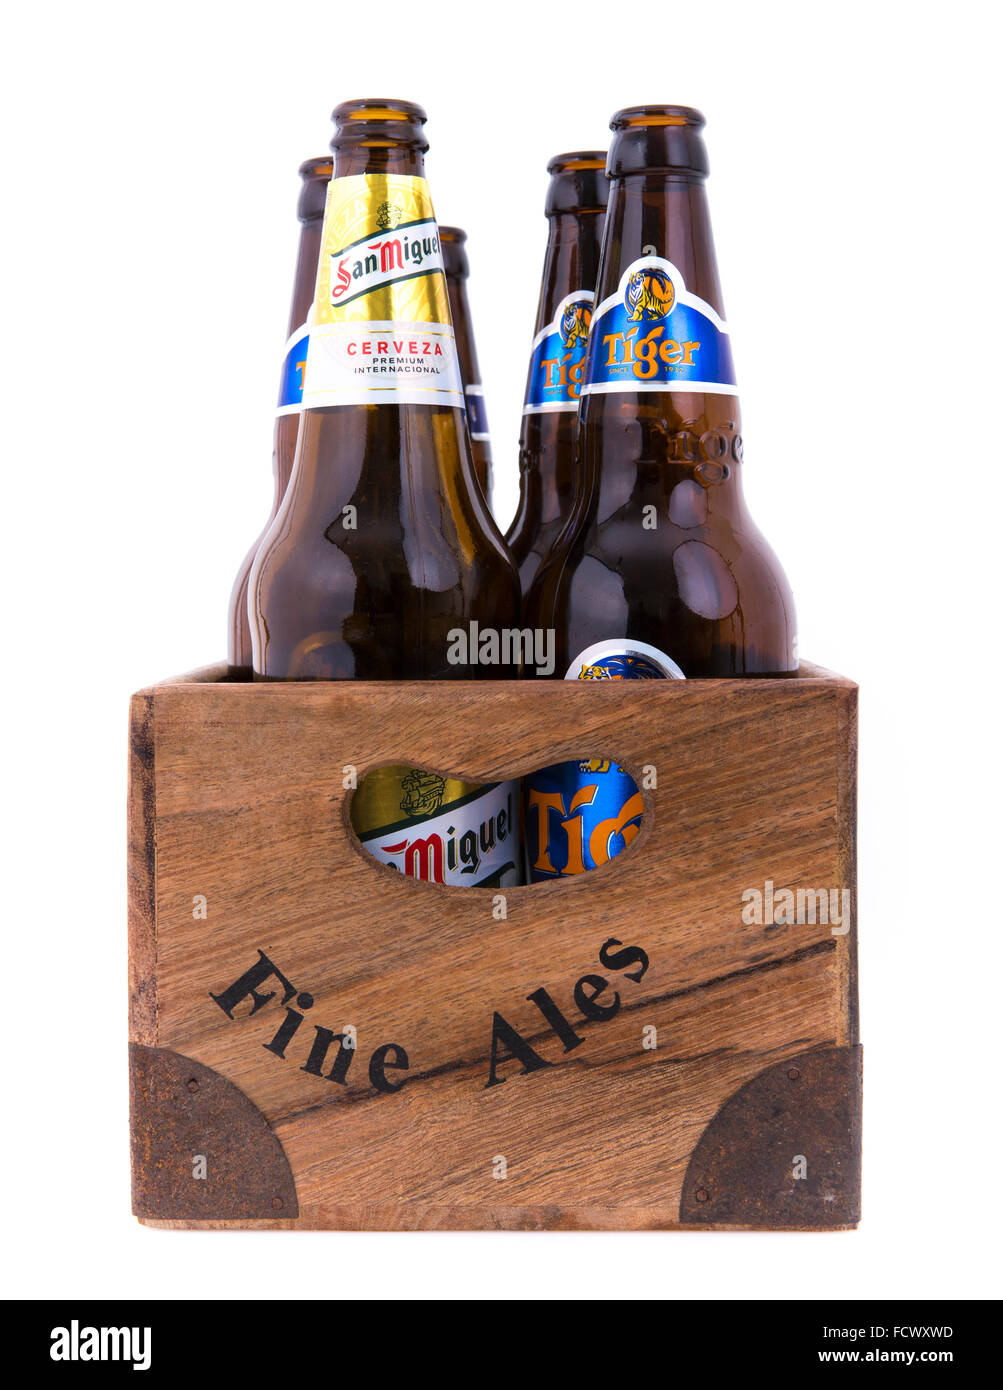 Beer crate immagini e fotografie stock ad alta risoluzione - Alamy